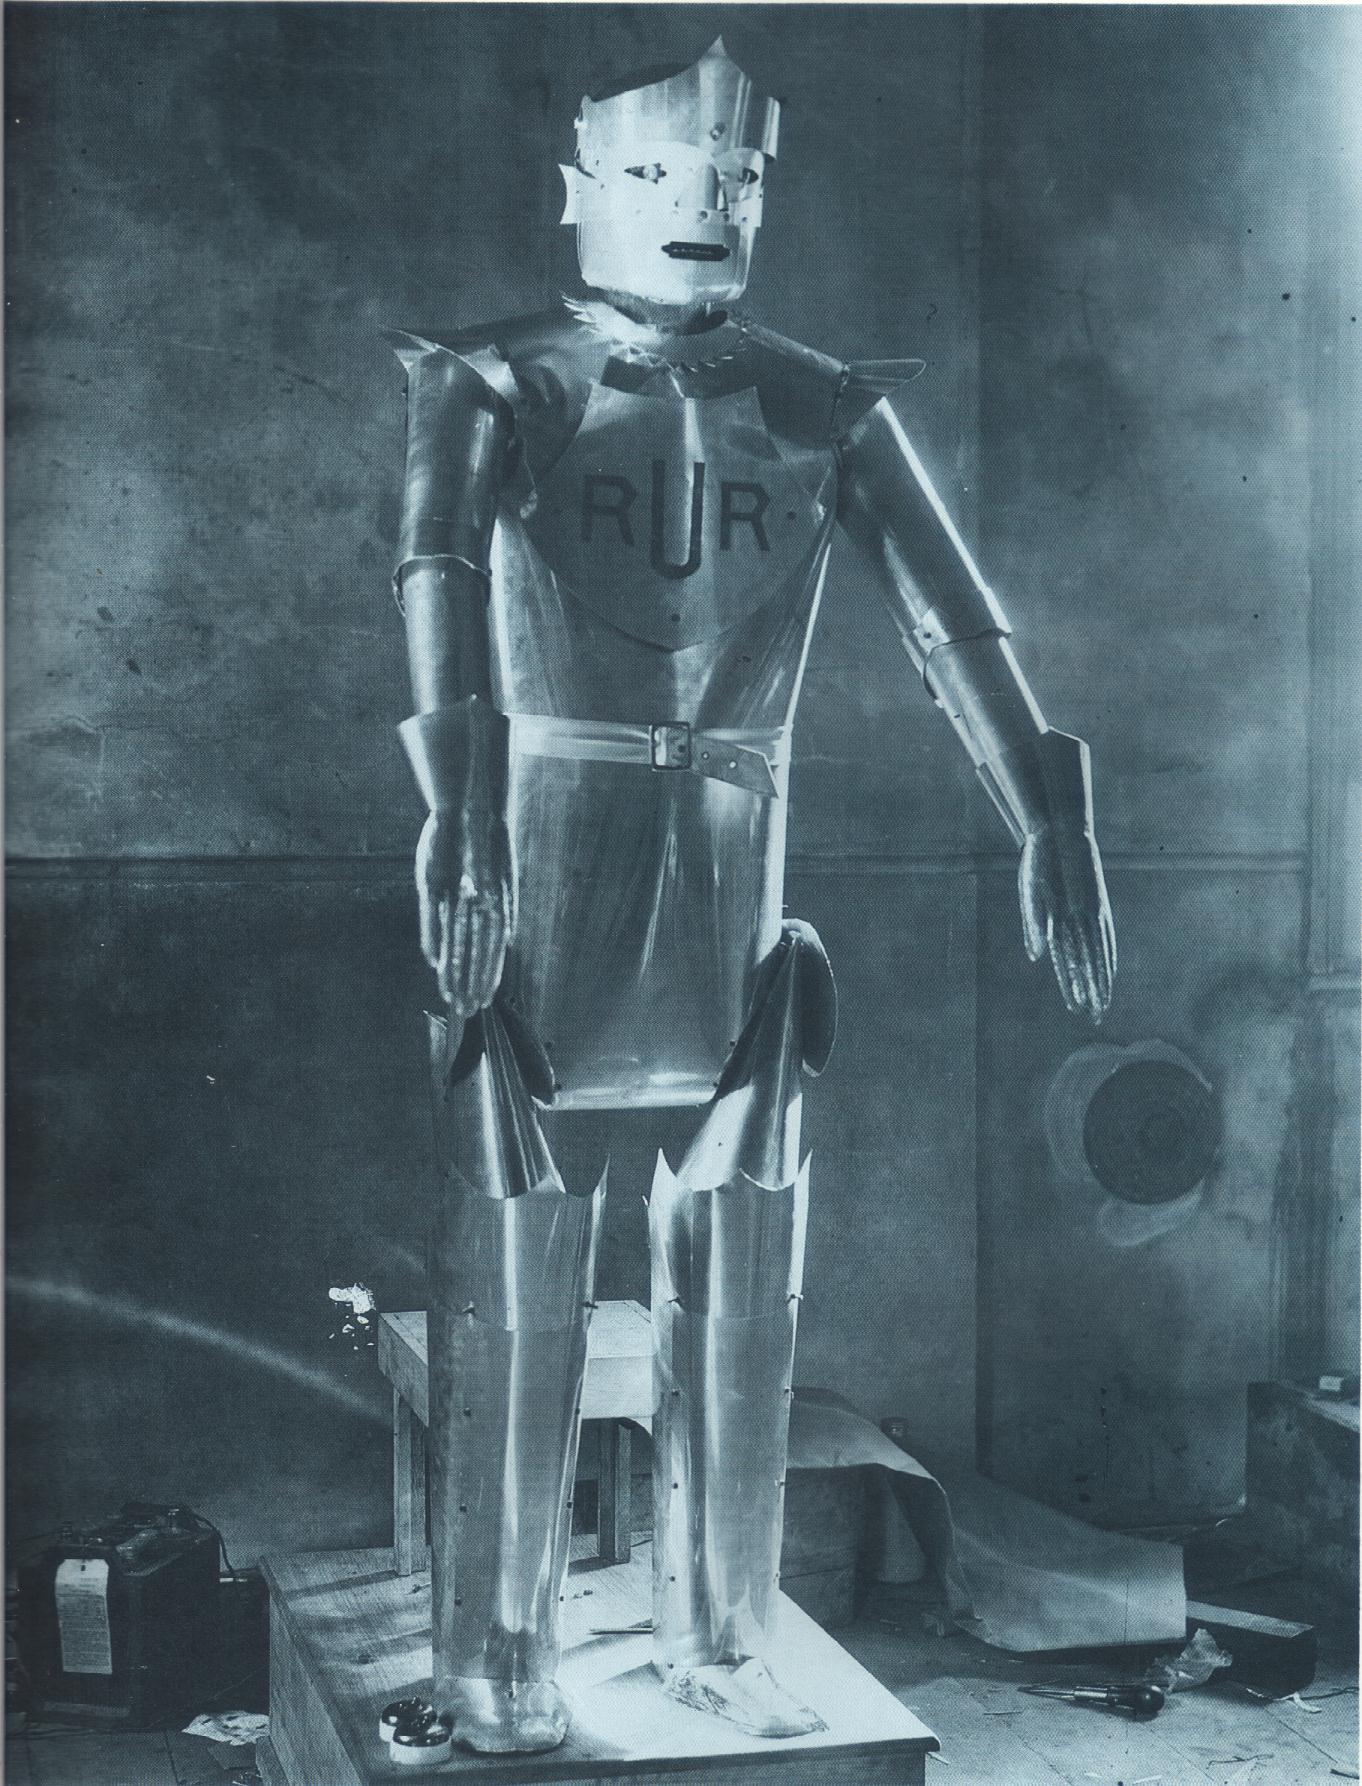 Первый механический прототип робота. Карел Чапек робот. R. U. R. («Россумские универсальные роботы») Карел Чапек. Карел Чапек пьеса «универсальные роботы»..